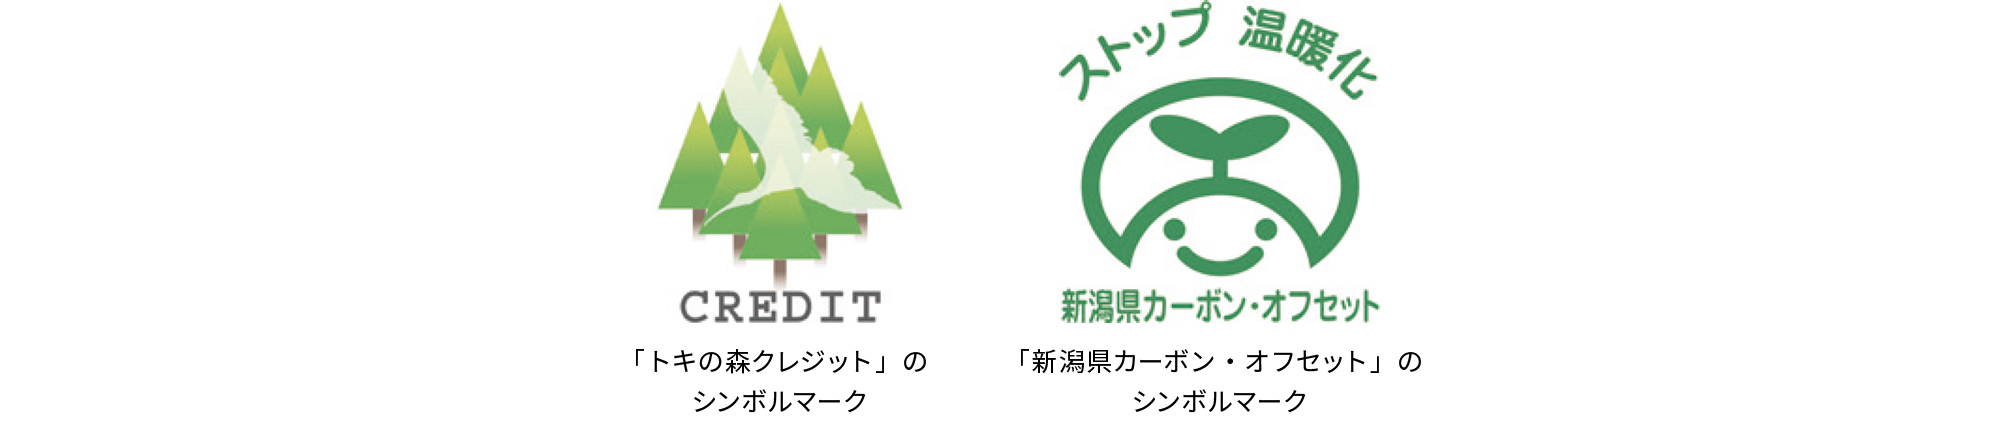 「トキの森クレジット」のシンボルマークと「新潟県カーボン・オフセット」のシンボルマーク